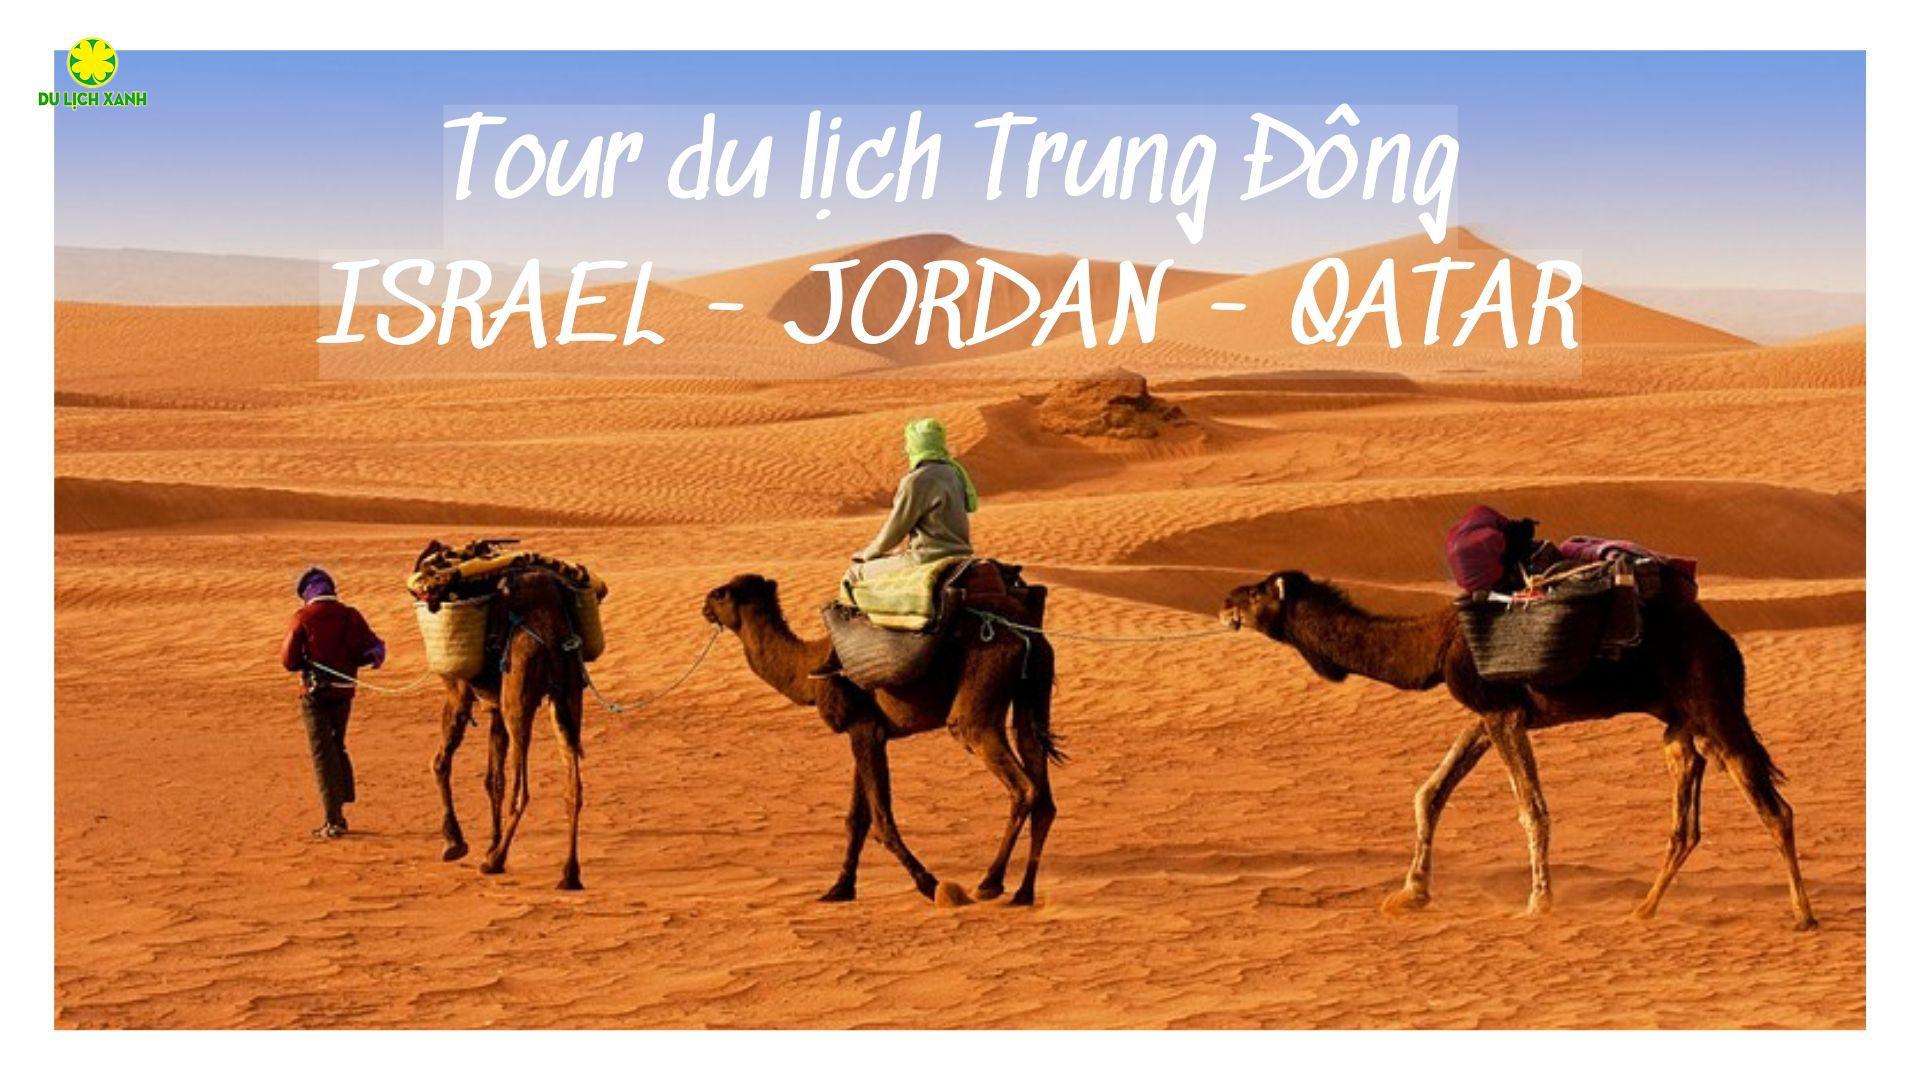 Tour du lịch Trung Đông: ISRAEL - JORDAN - QATAR 11N10D